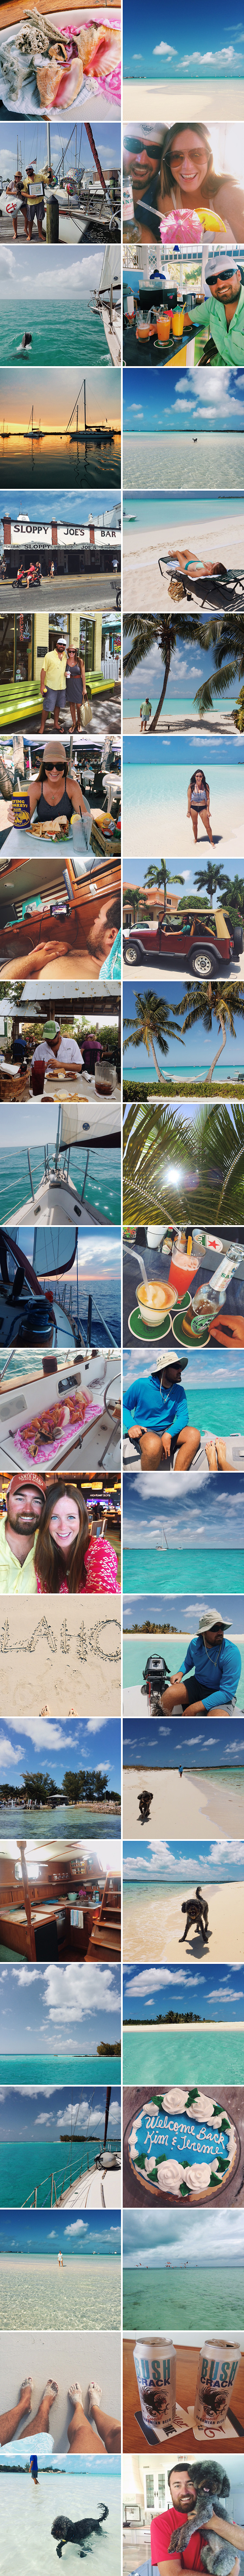 Sailing-Blog-Cruising-Caribbean-Bahamas-LAHOWIND-Boat Life Lately May 2015